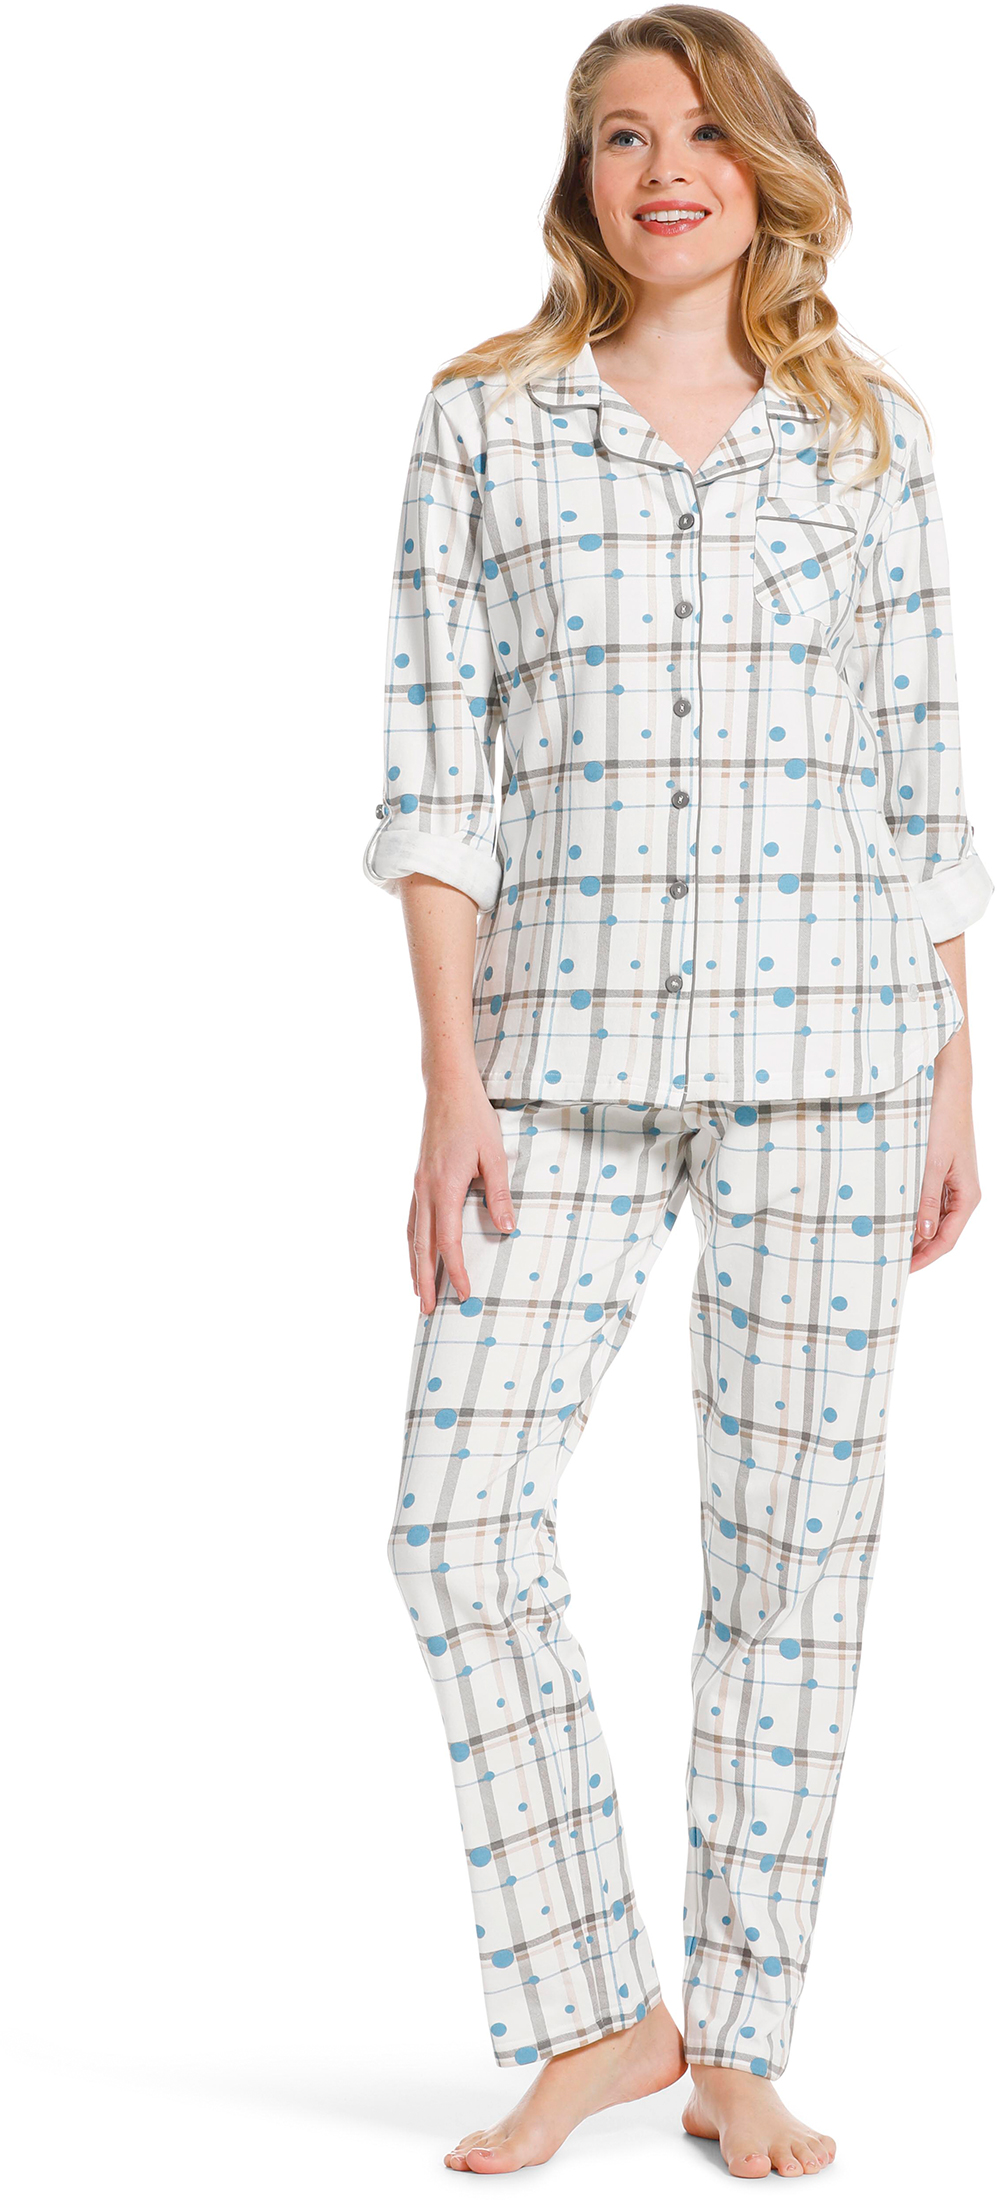 Pastunette dames doorknoop pyjama 20222 142 6 48